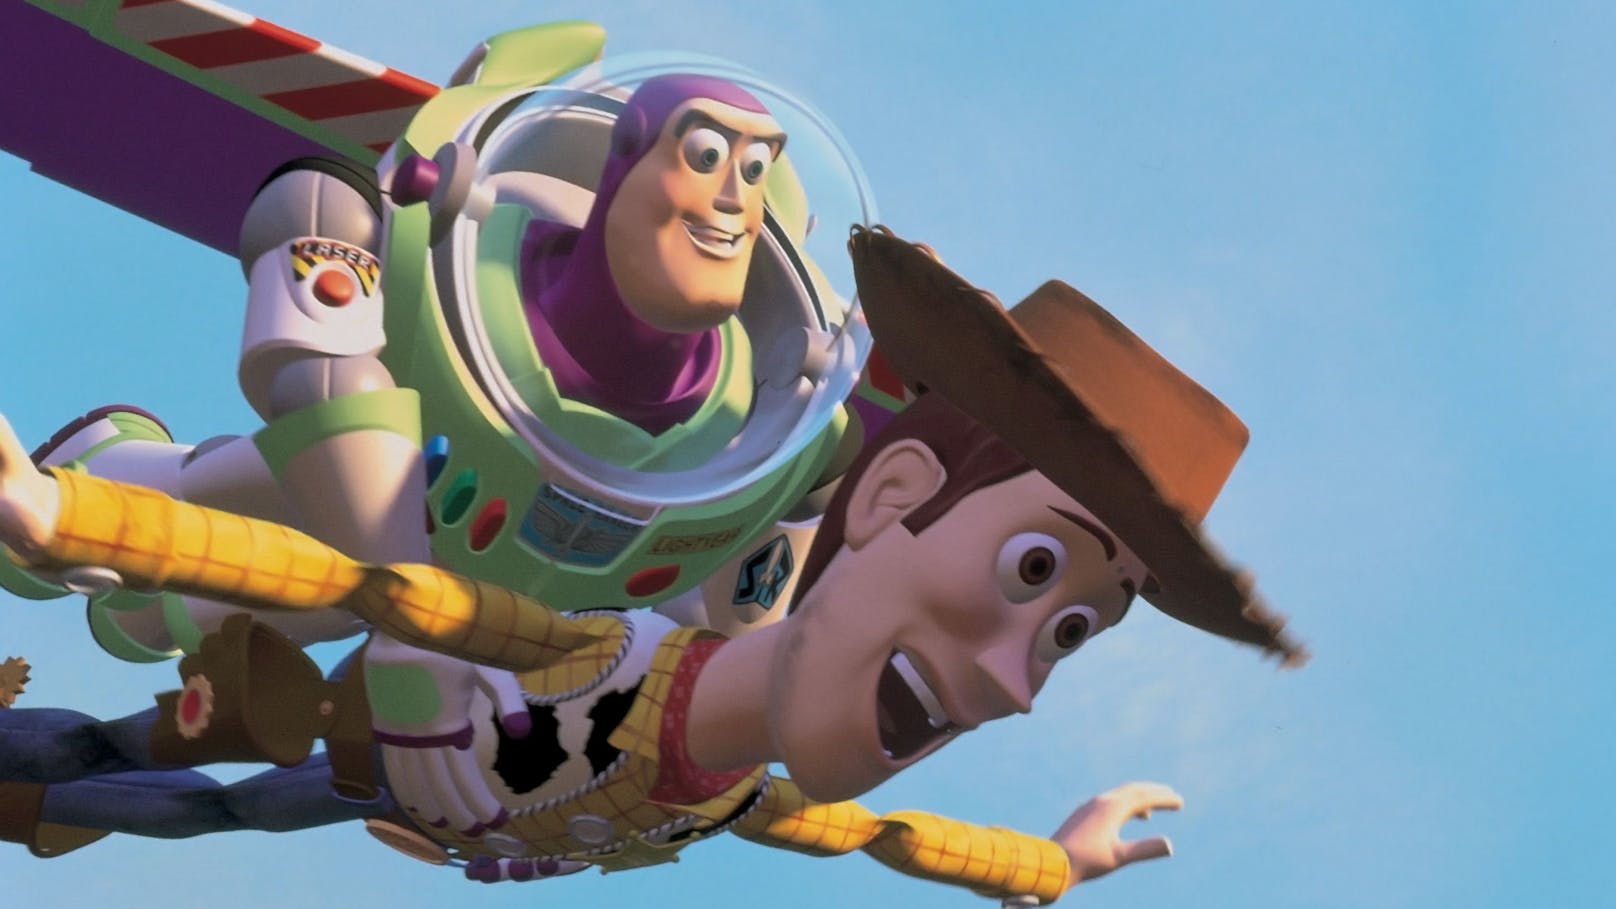 Diese Original-Stars kehren zu "Toy Story" zurück